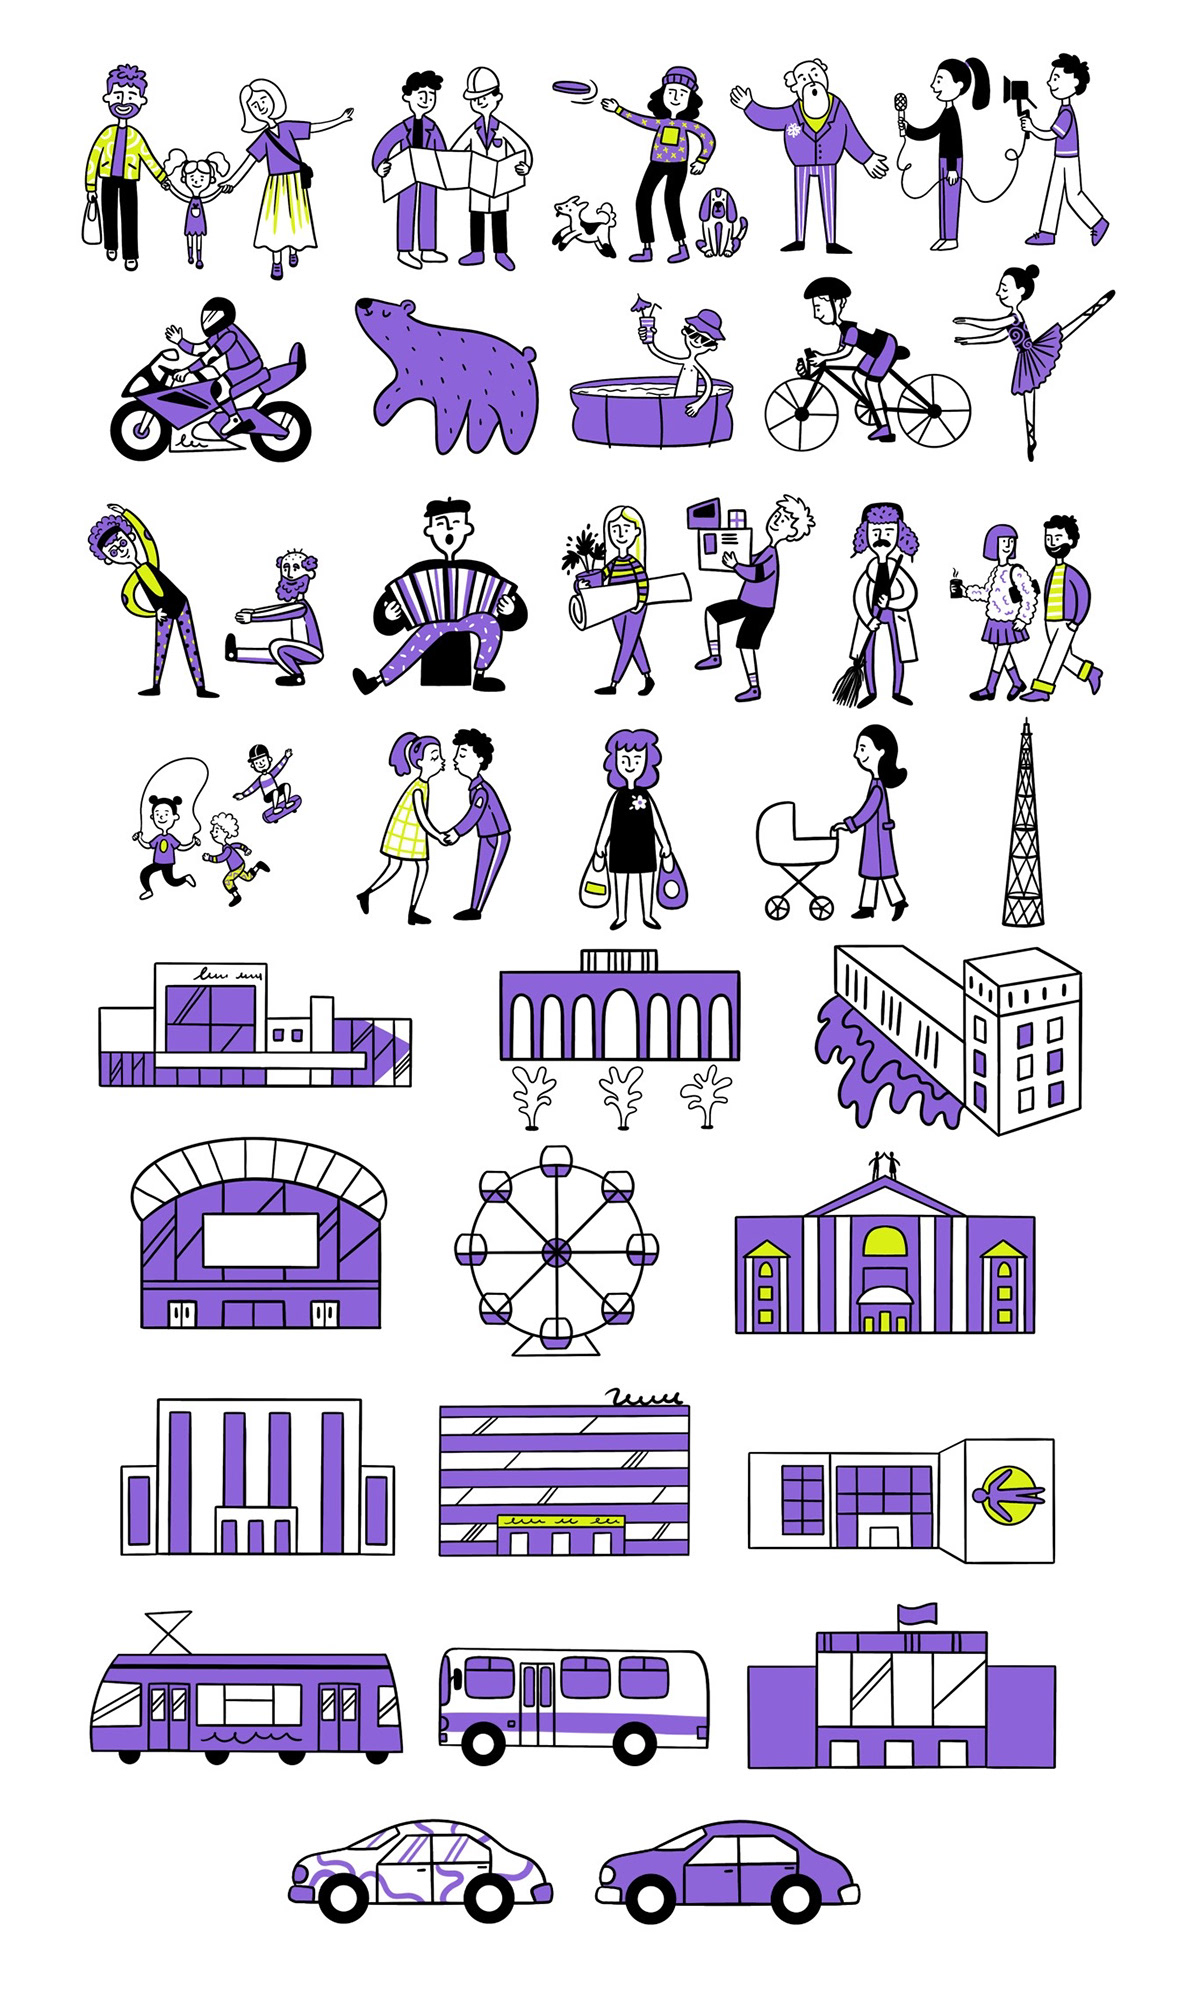 doodle Character design  doodles cityscape City branding tourism people illustration cartoon doodle art